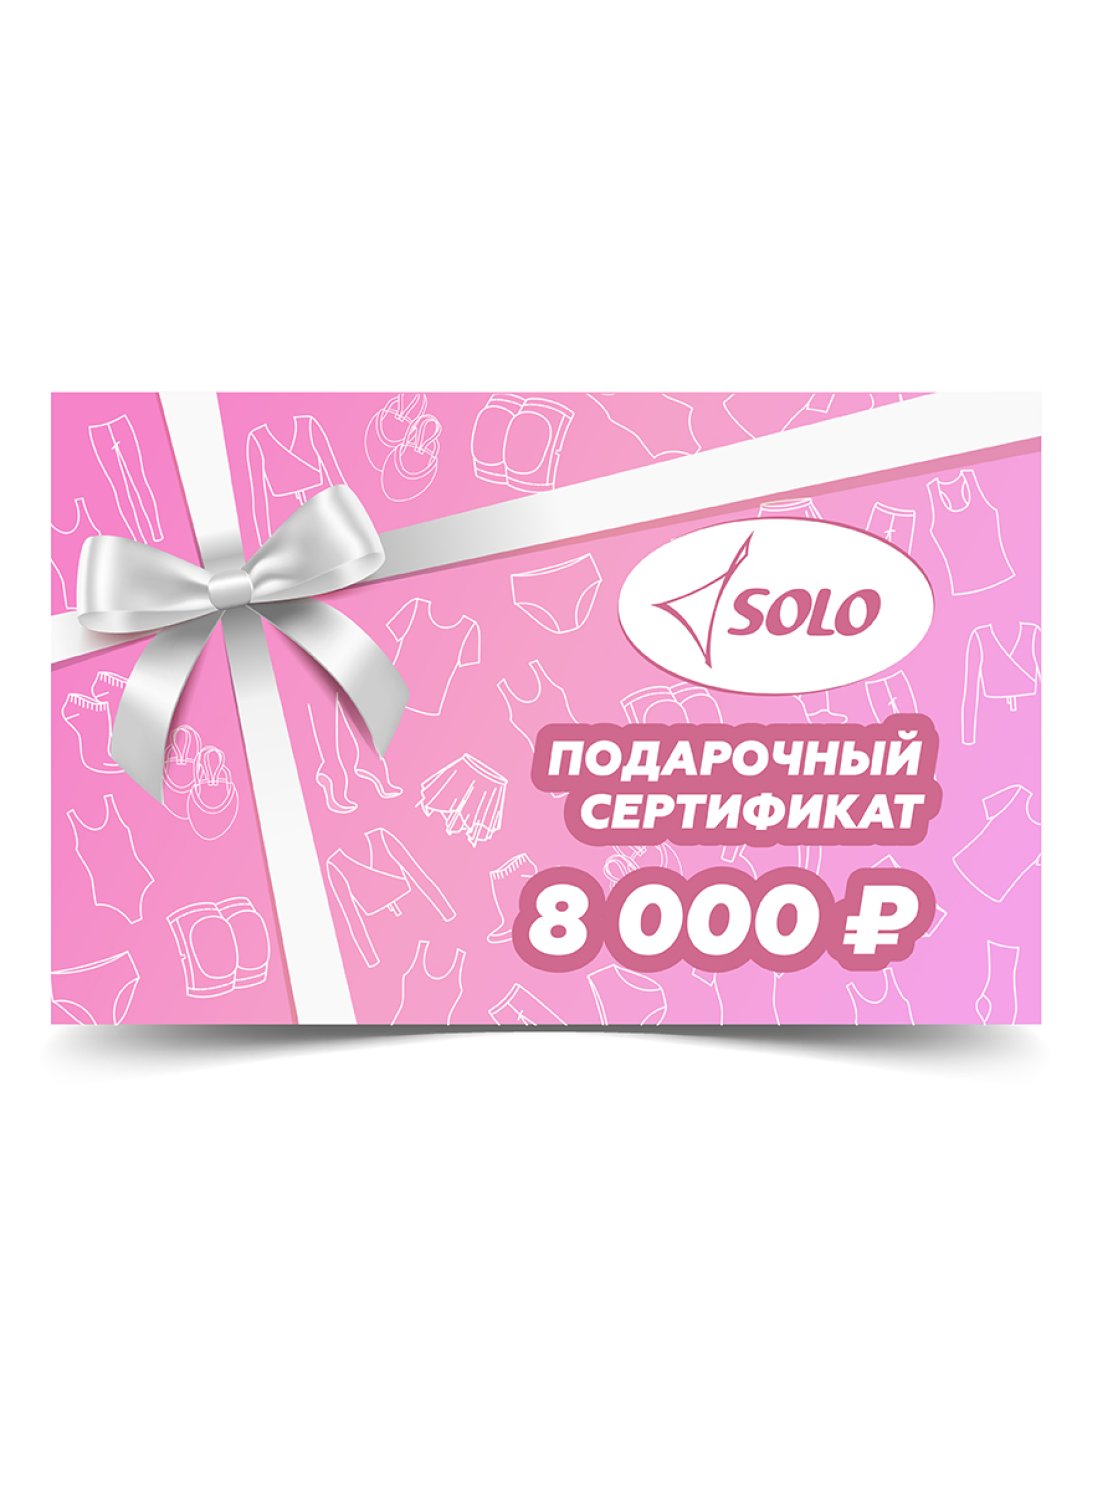 Электронный подарочный сертификат номиналом 8 000 рублей